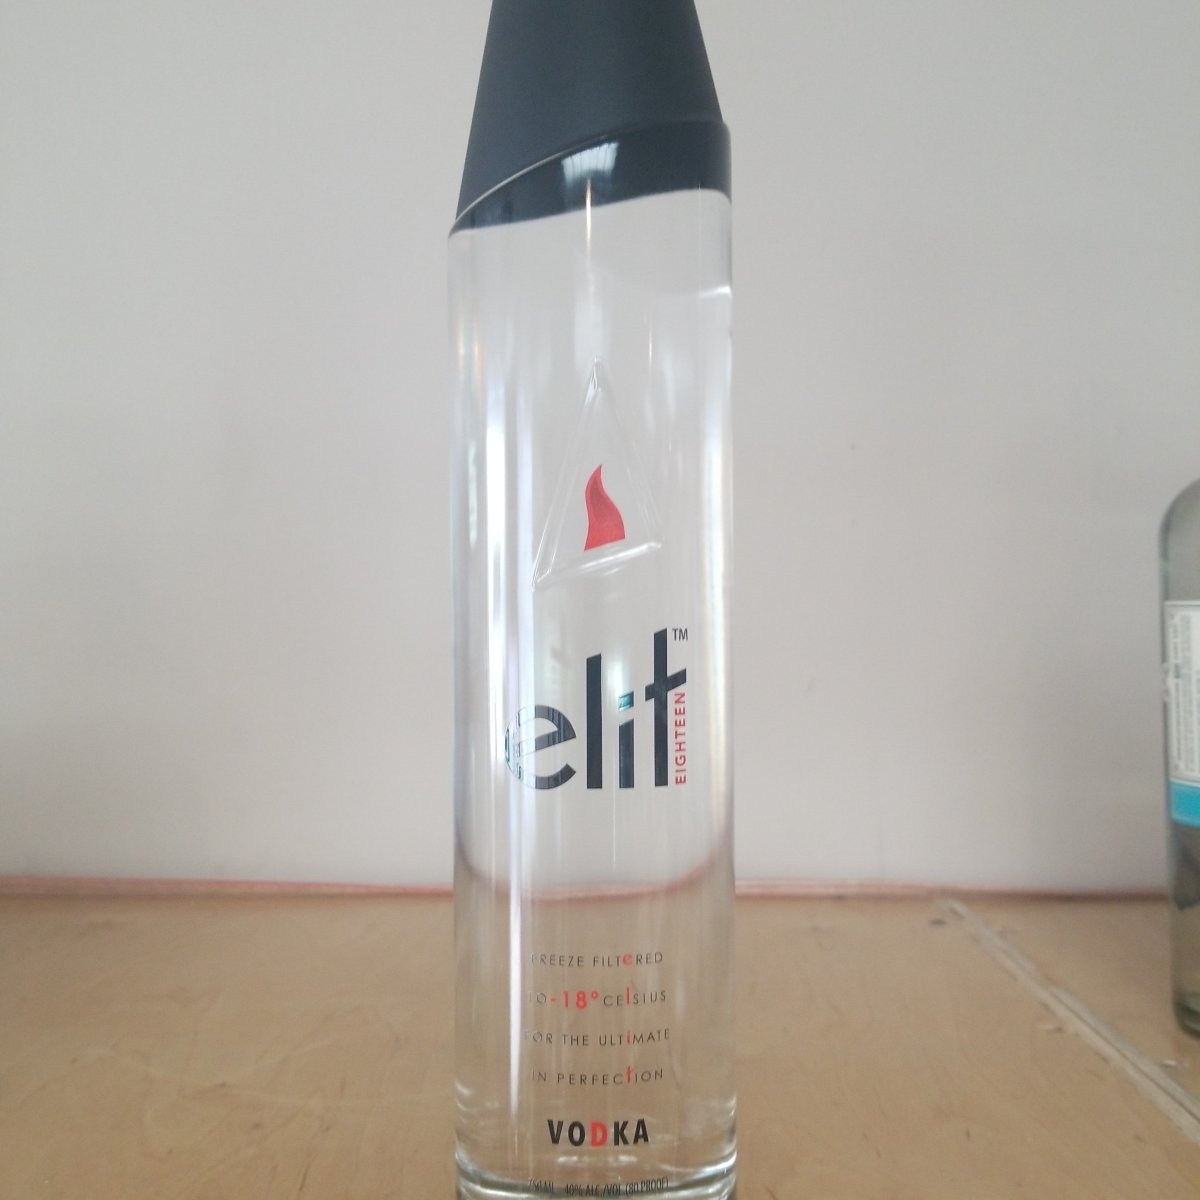 Stolichnaya Elite Vodka 750ml - Sip & Say